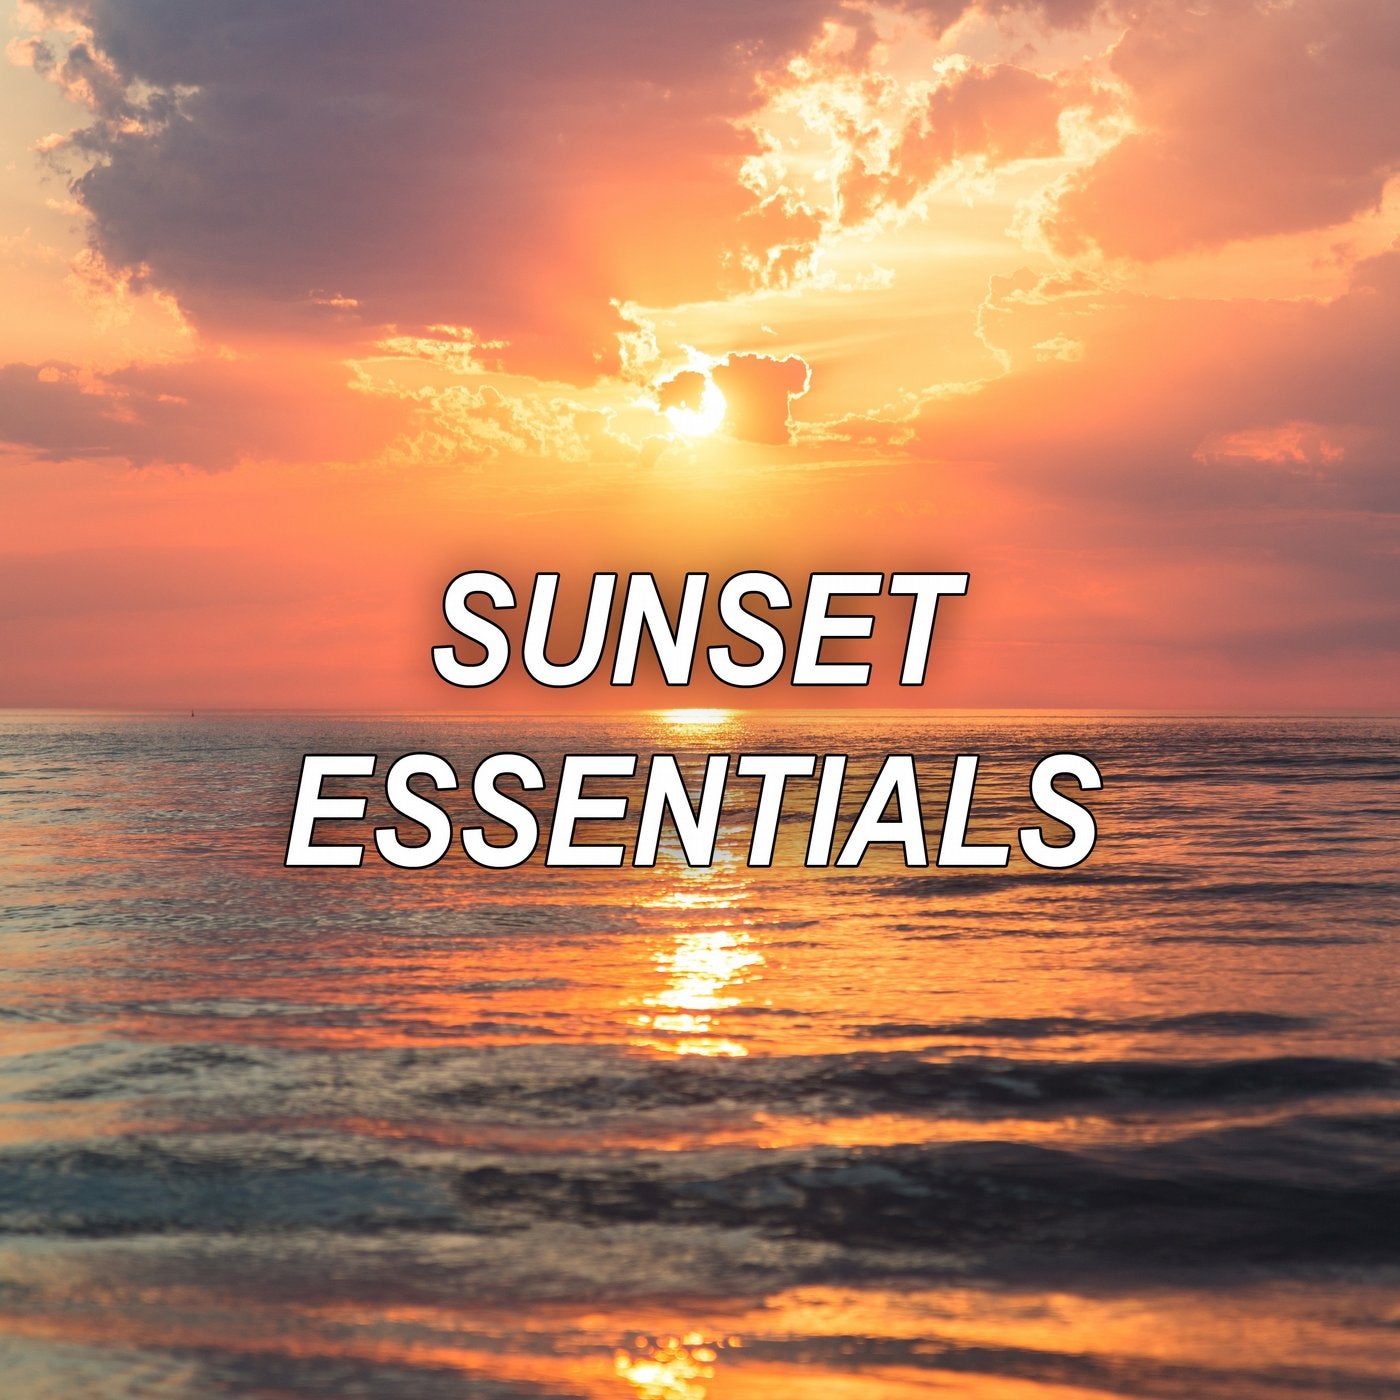 Sunset Essentials